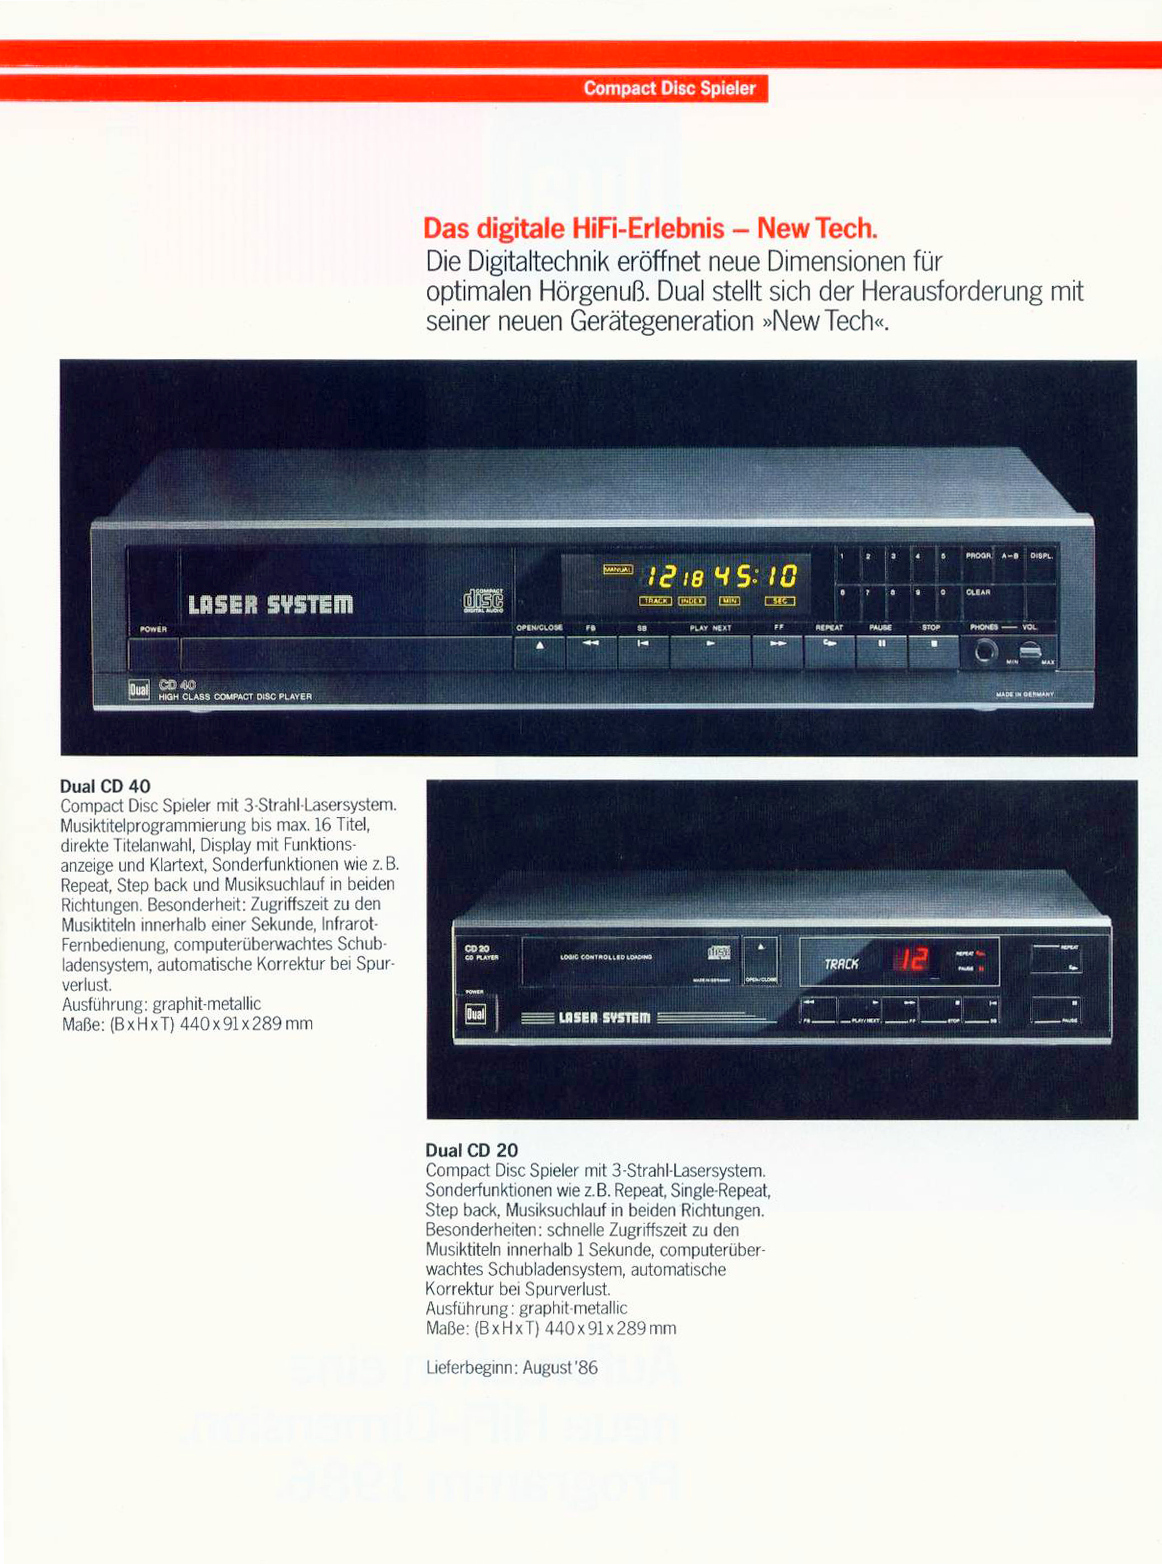 Dual CD-20-40-Prospekt-1986.jpg